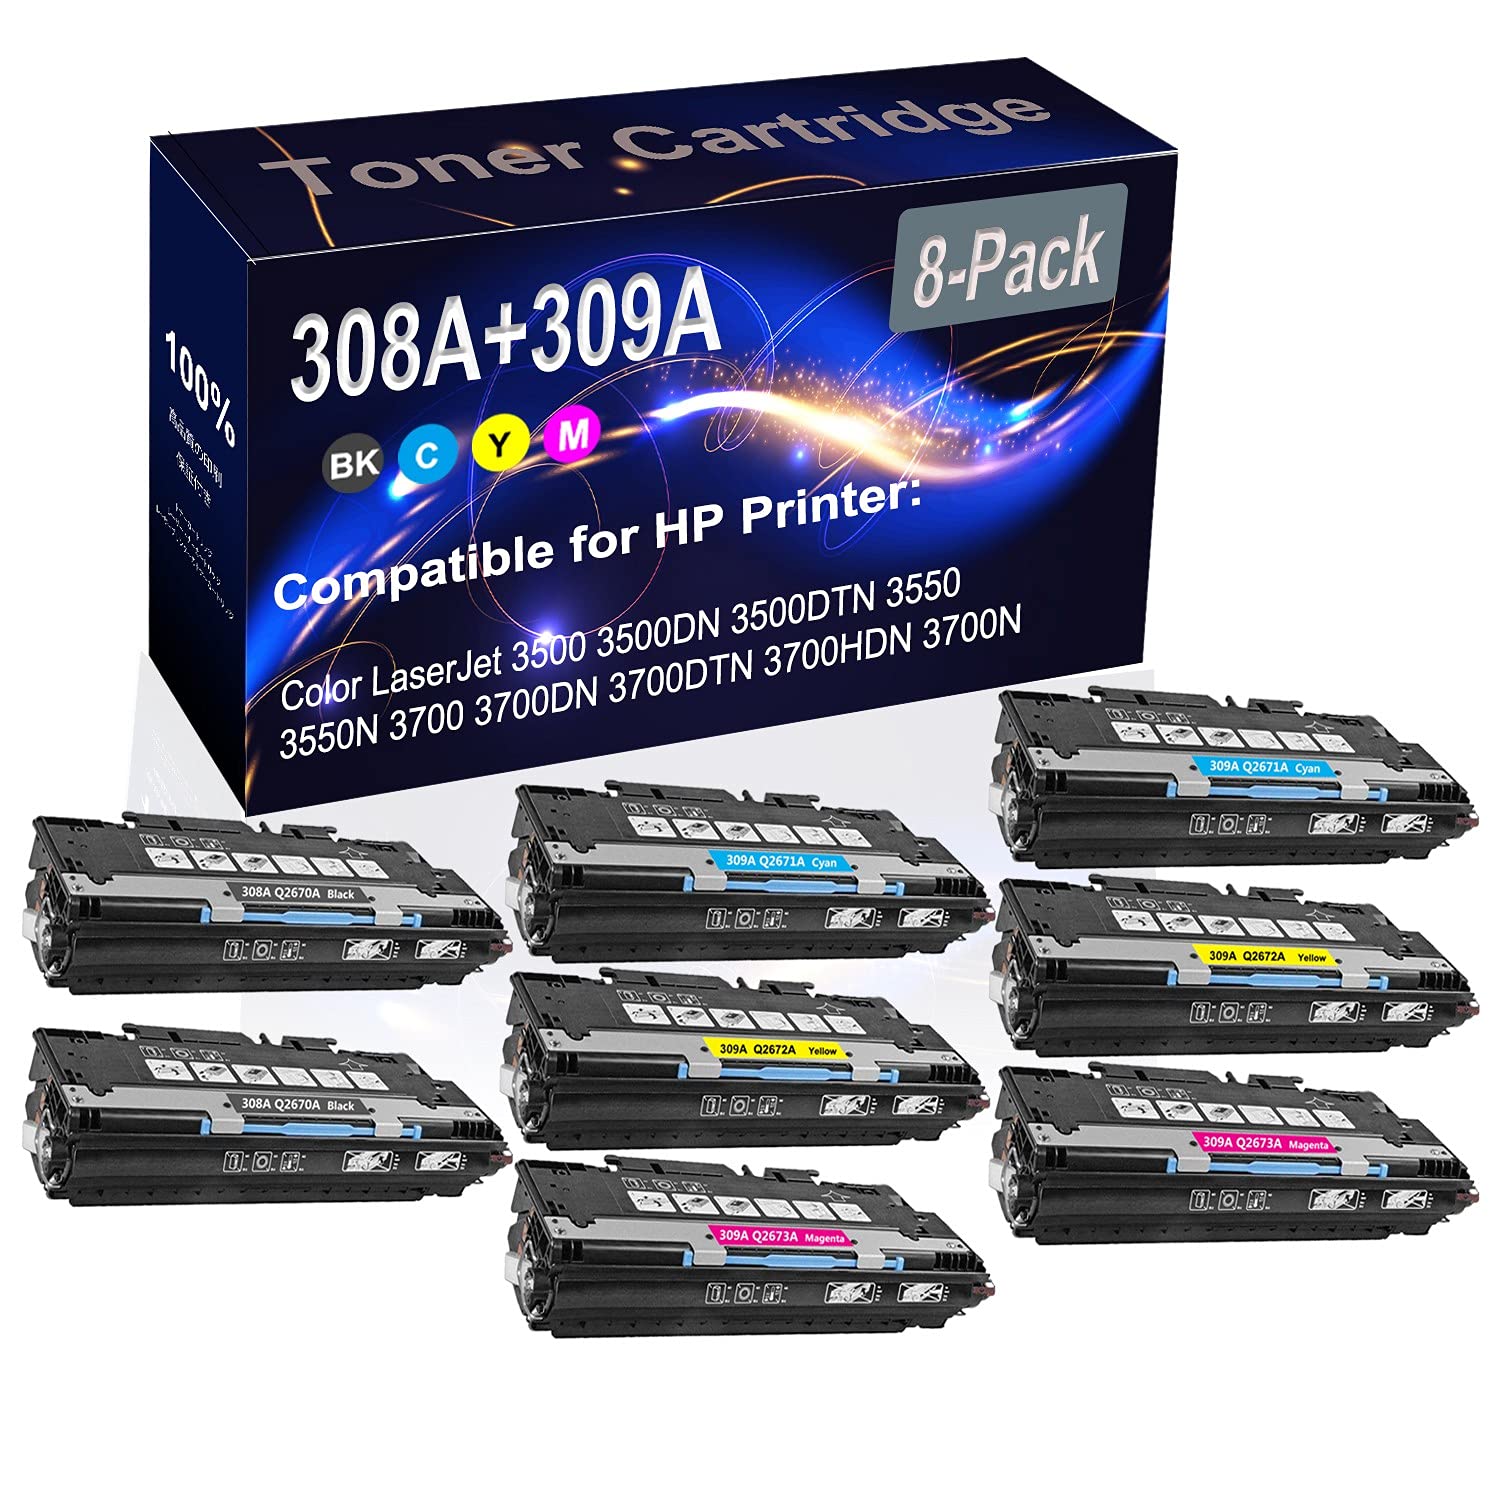 8-Pack (2BK+2C+2Y+2M) Compatible High Yield 308A 309A (Q2670A Q2671A Q2672A Q2673A) Printer Toner Cartridge use for HP 3500 3500DN 3500DTN 3550 3550N 3700 3700DN Printers